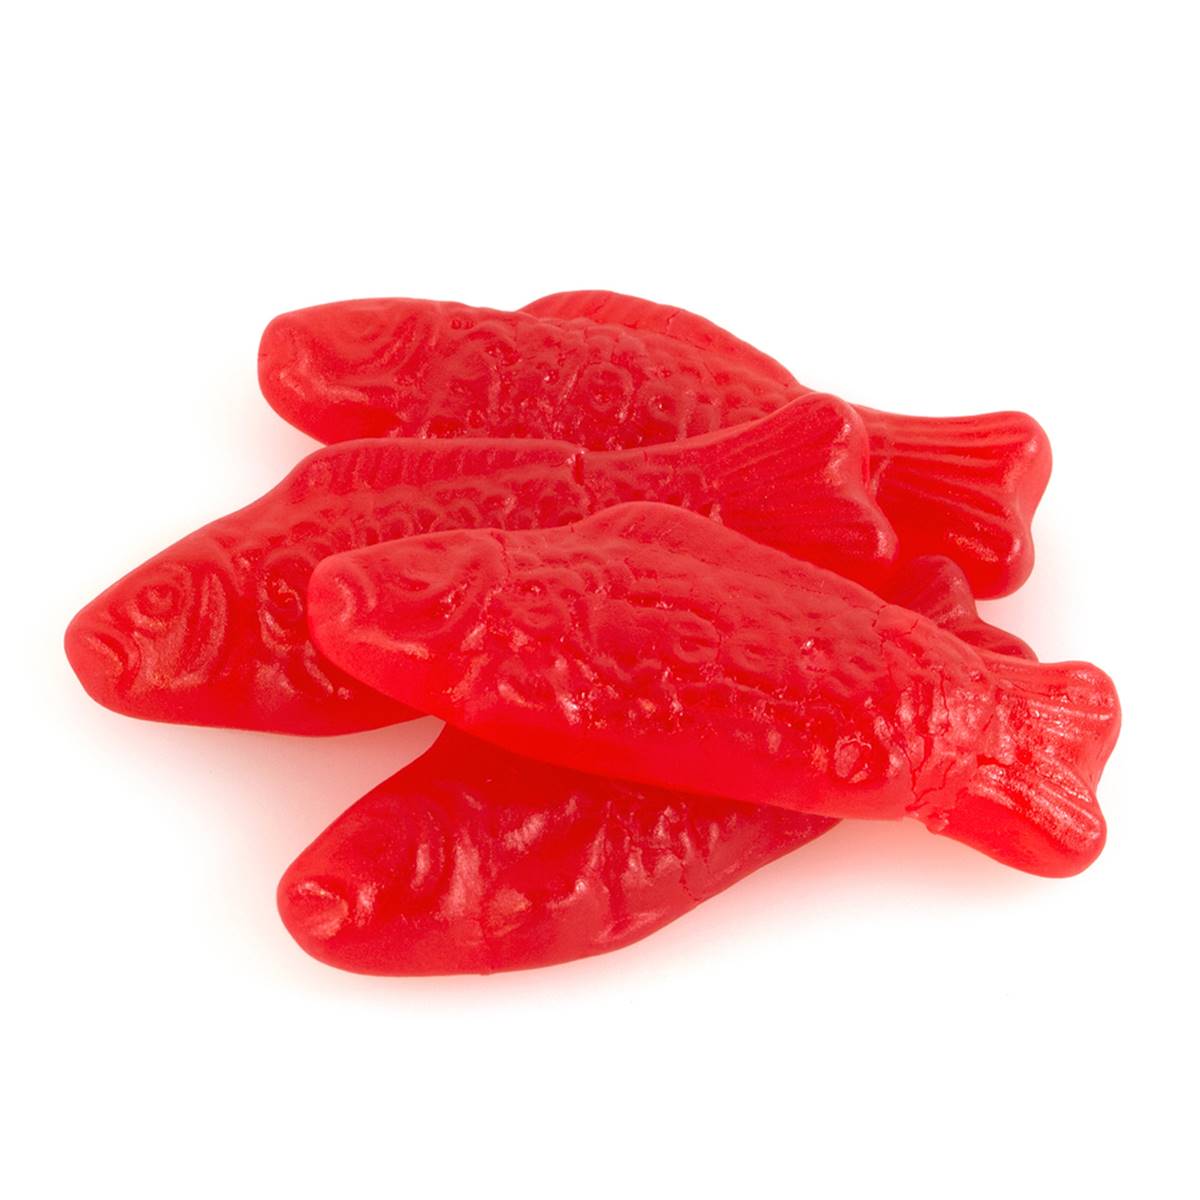 Swedish Fish Red 4 oz